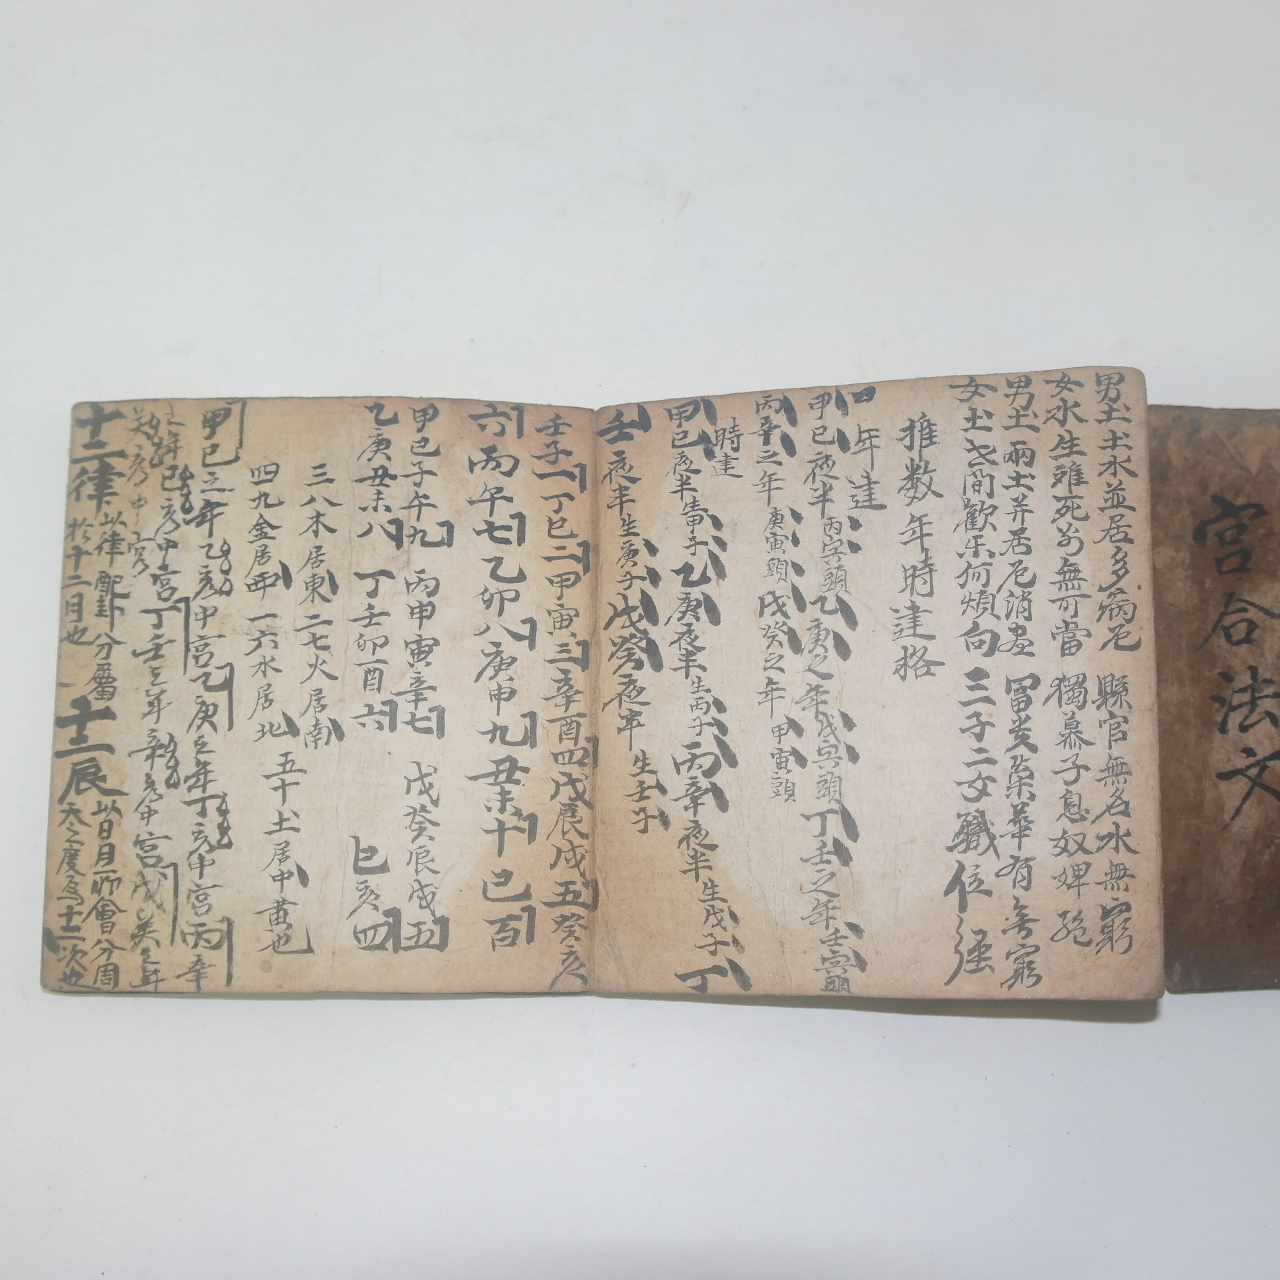 조선시대 궁합,점 관련 수진절첩본 궁합법문(宮合法文)